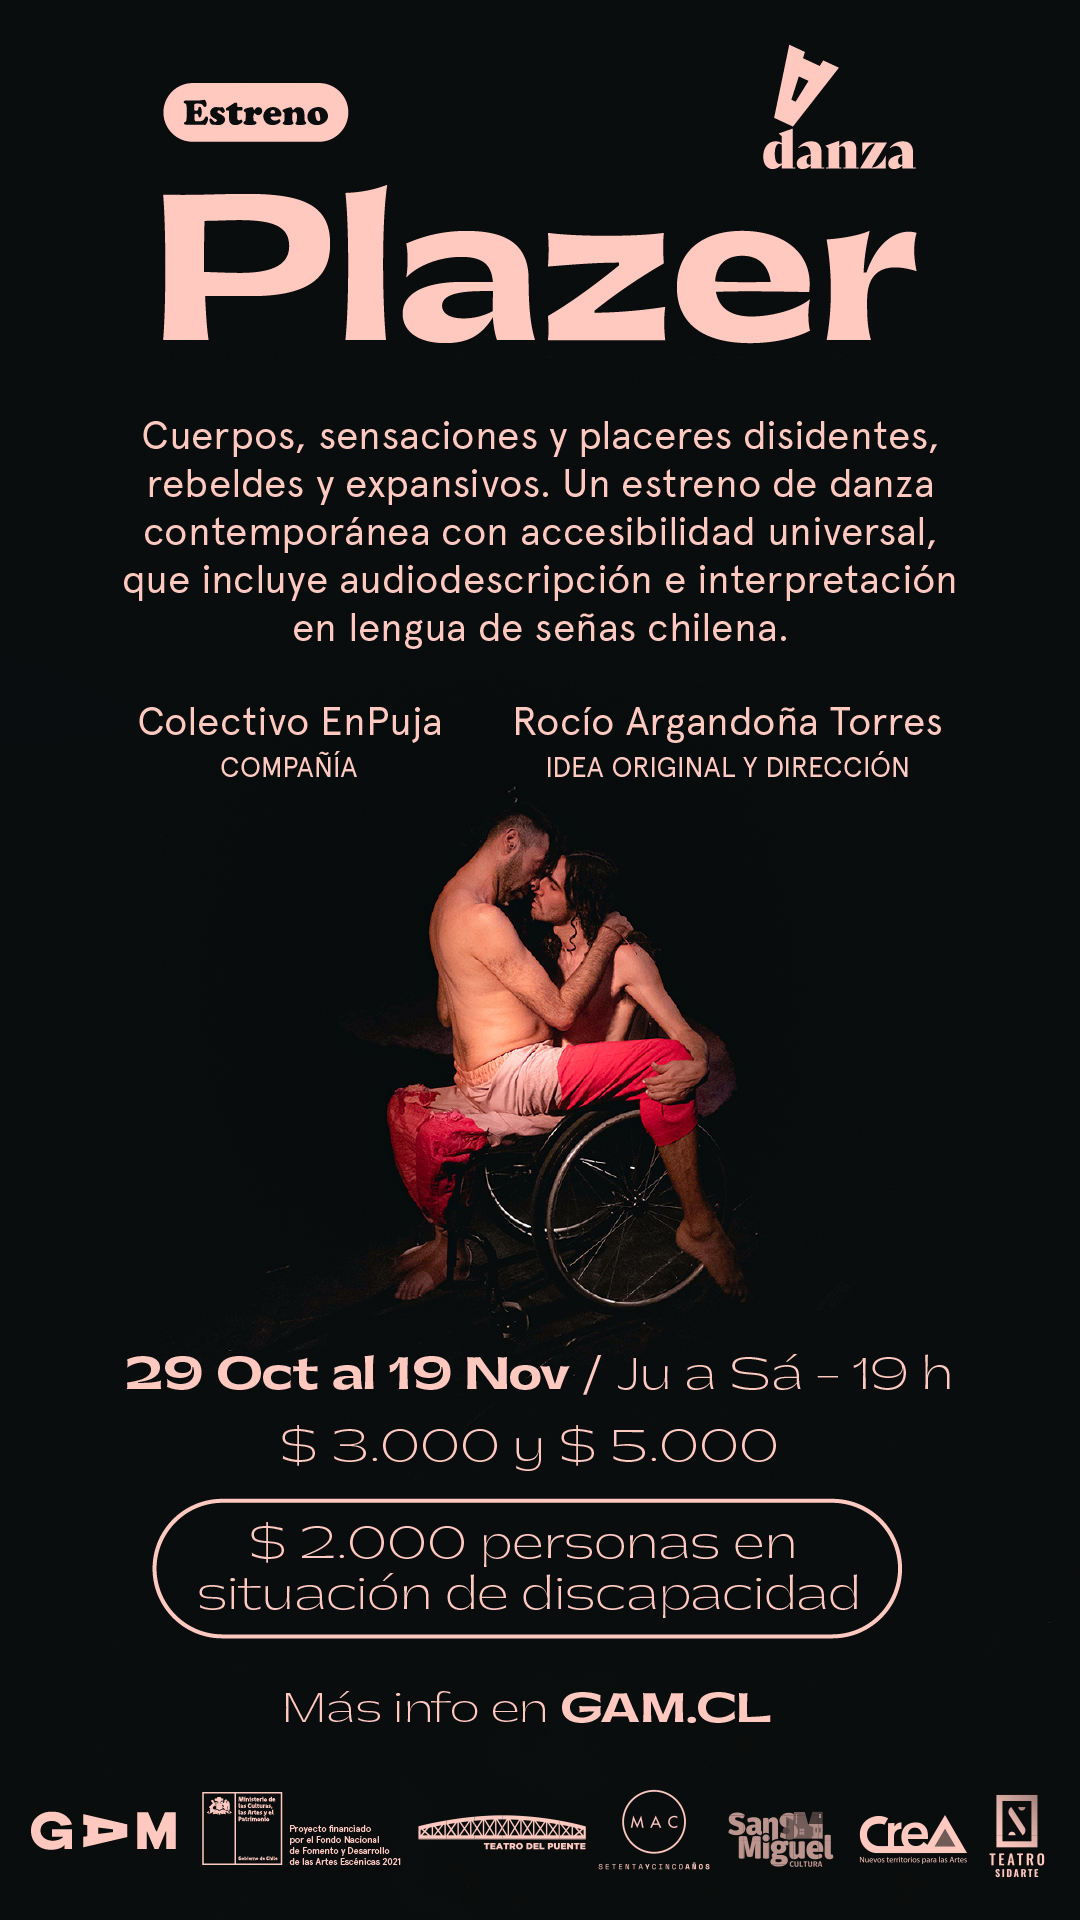 Afiche de estreno de obra de danza "Plazer" en fondo negro, letras rosado claro.  Aparecen 2 cuerpos (Javier y Diego), uno de ellos en silla de ruedas, ambos de pantalones rosados, torso y pies desnudos. Están enfrentados uno sentado arriba de otro